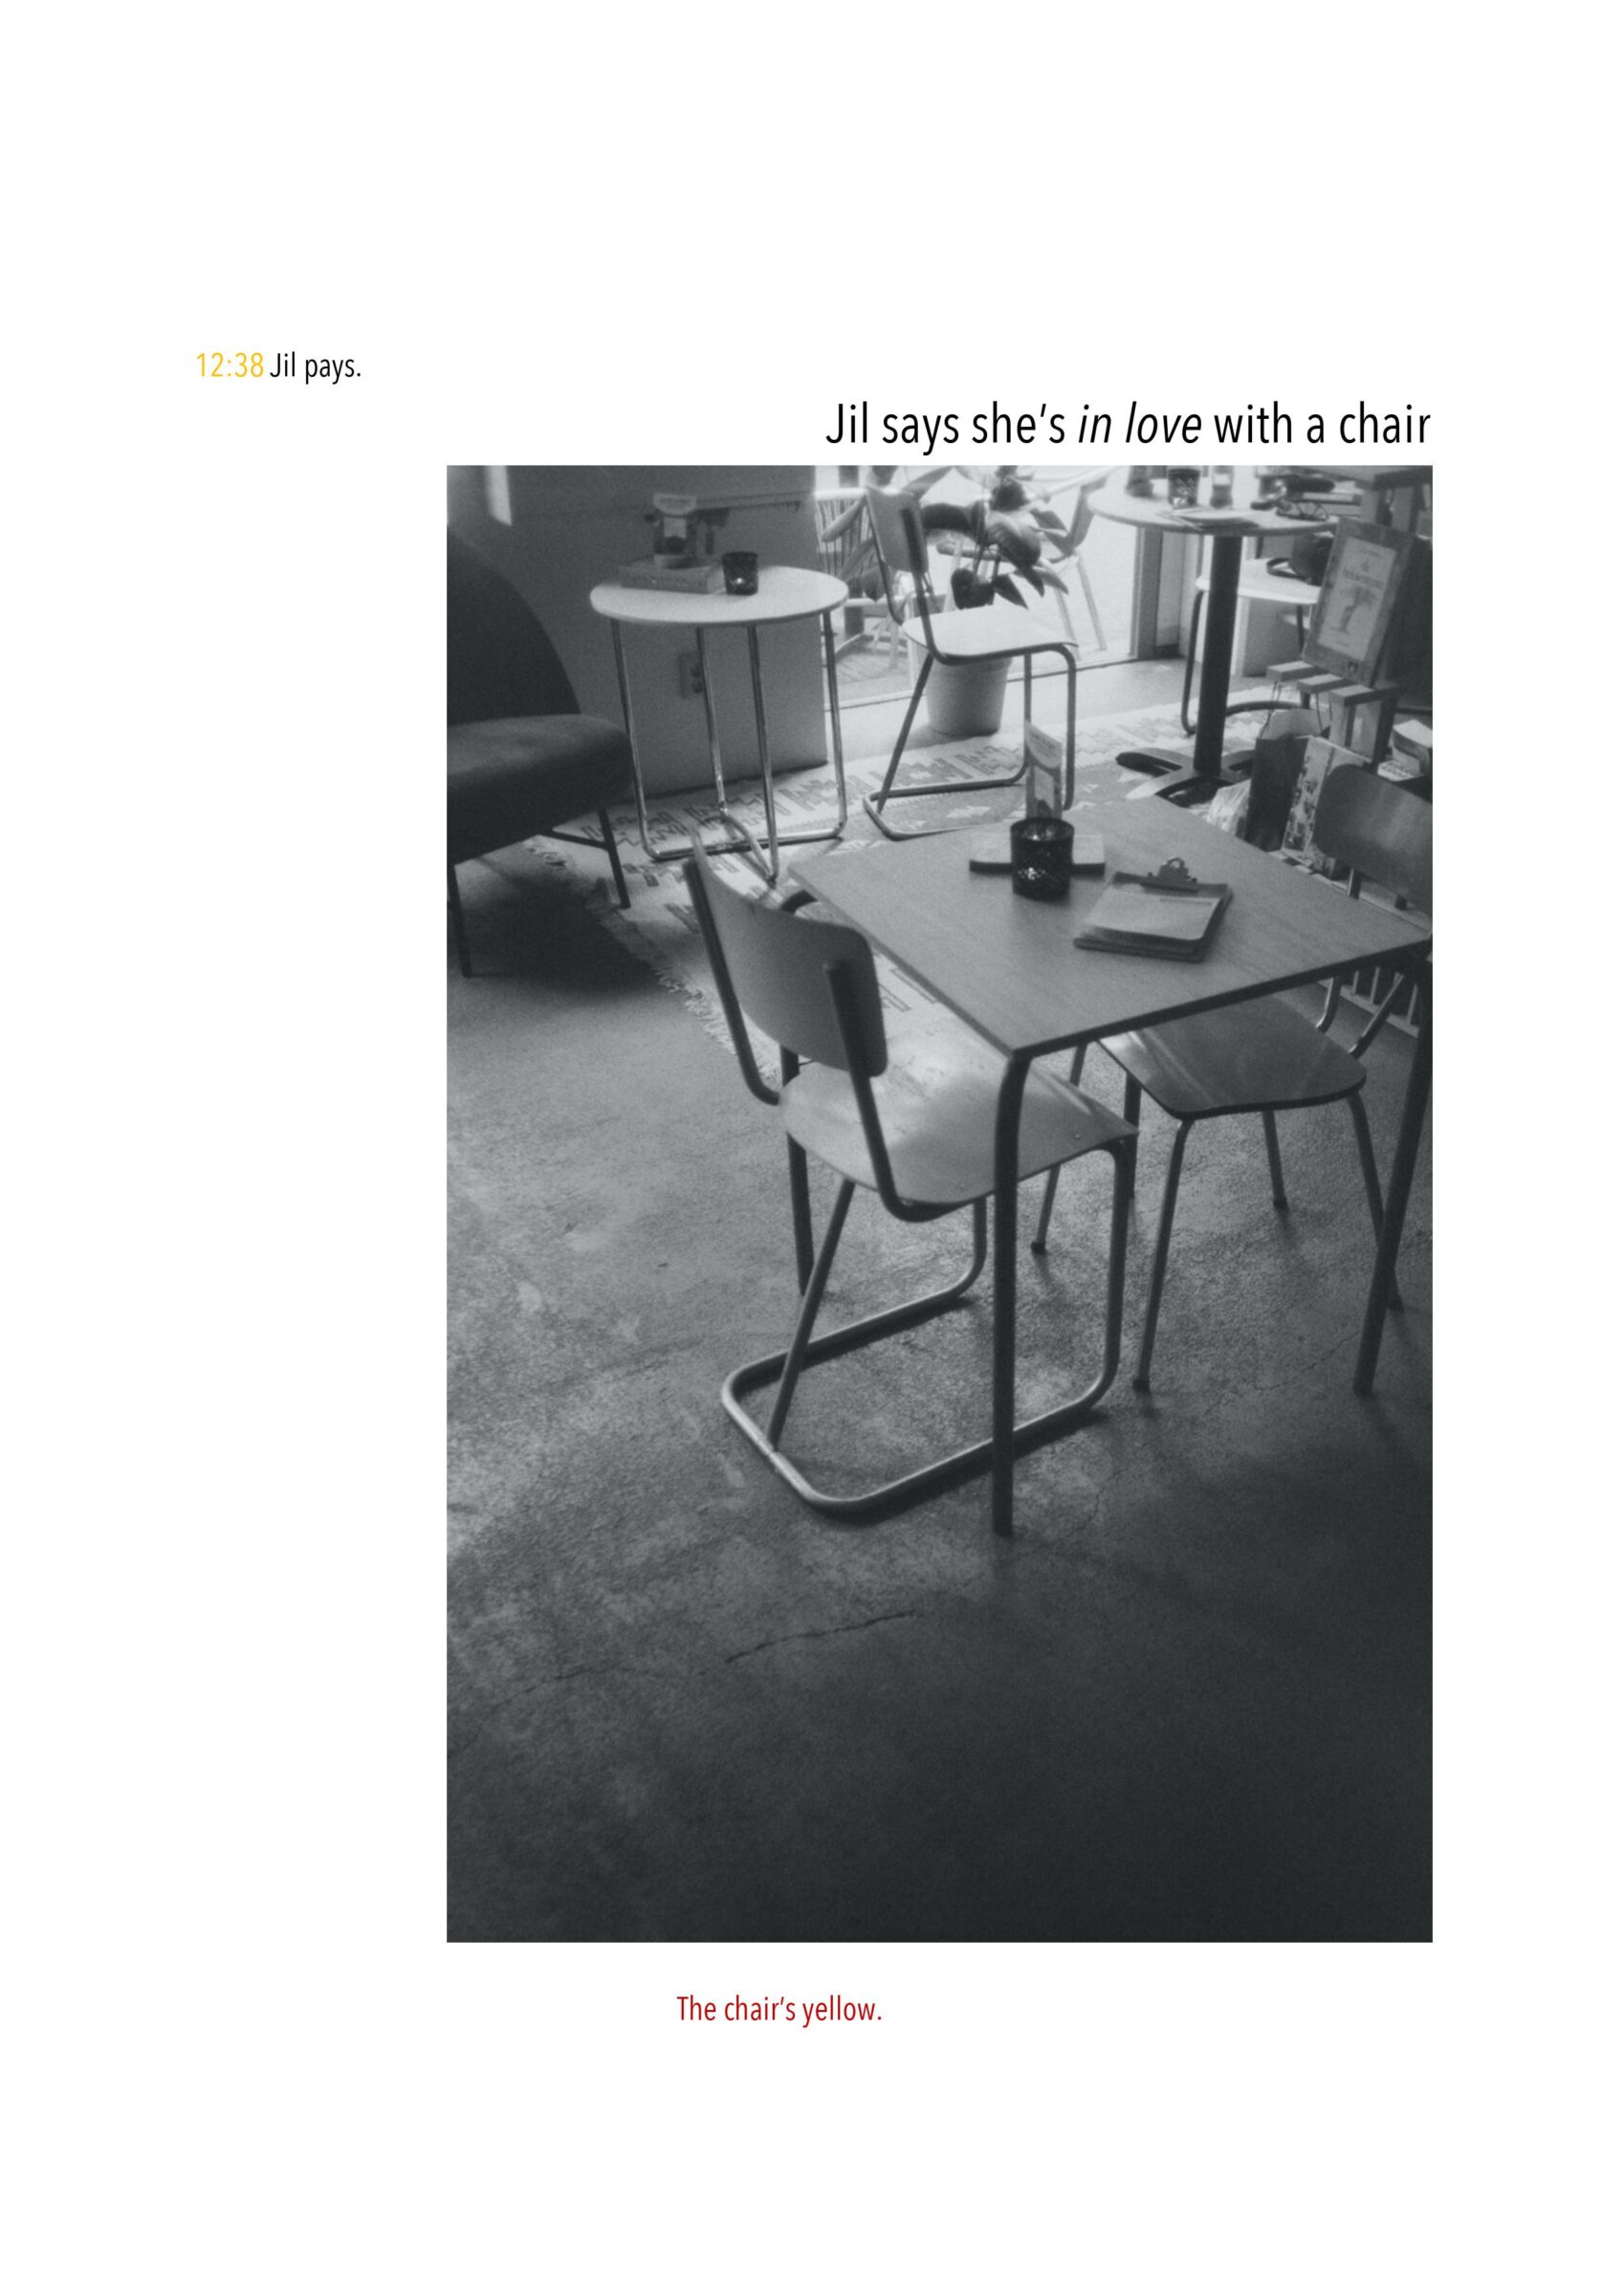 12:38 Jil pays. Jil says she’s in love with a chair. Onder de tekst een zwart-wit foto van stoelen in een café. Onder de foto staat: The chair’s yellow.